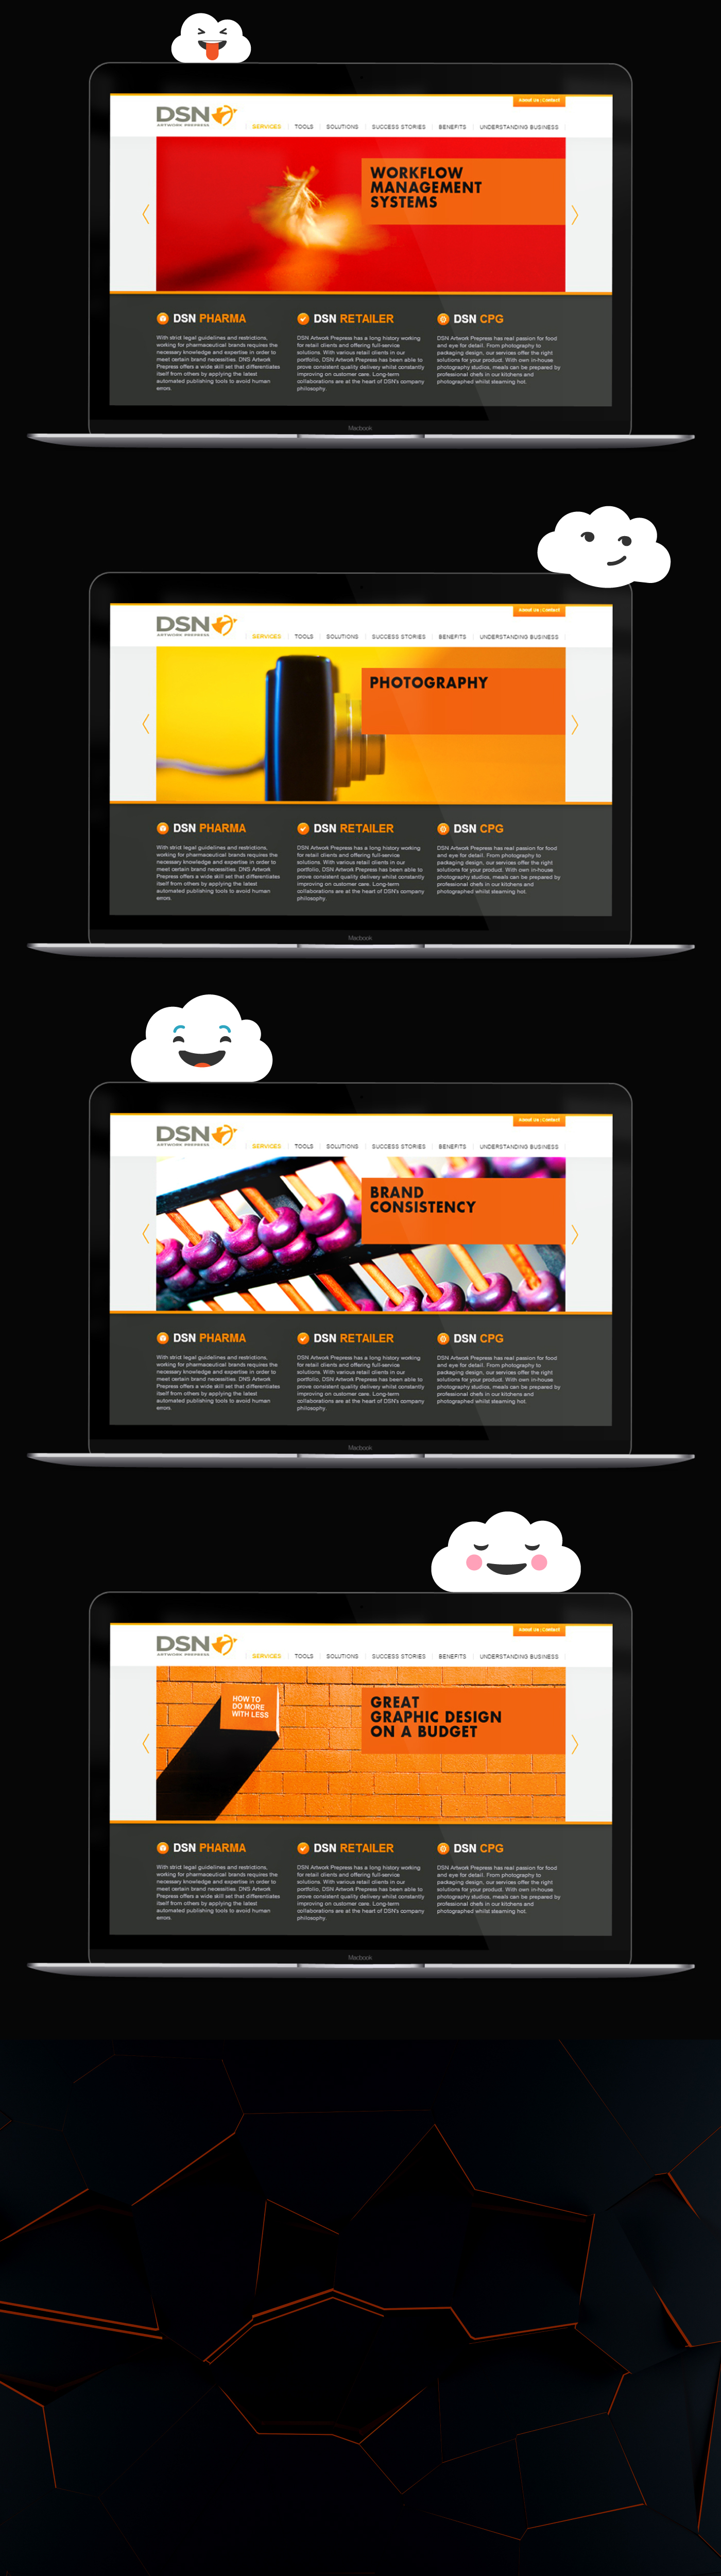 Website redesign refresh Webdesign branding 